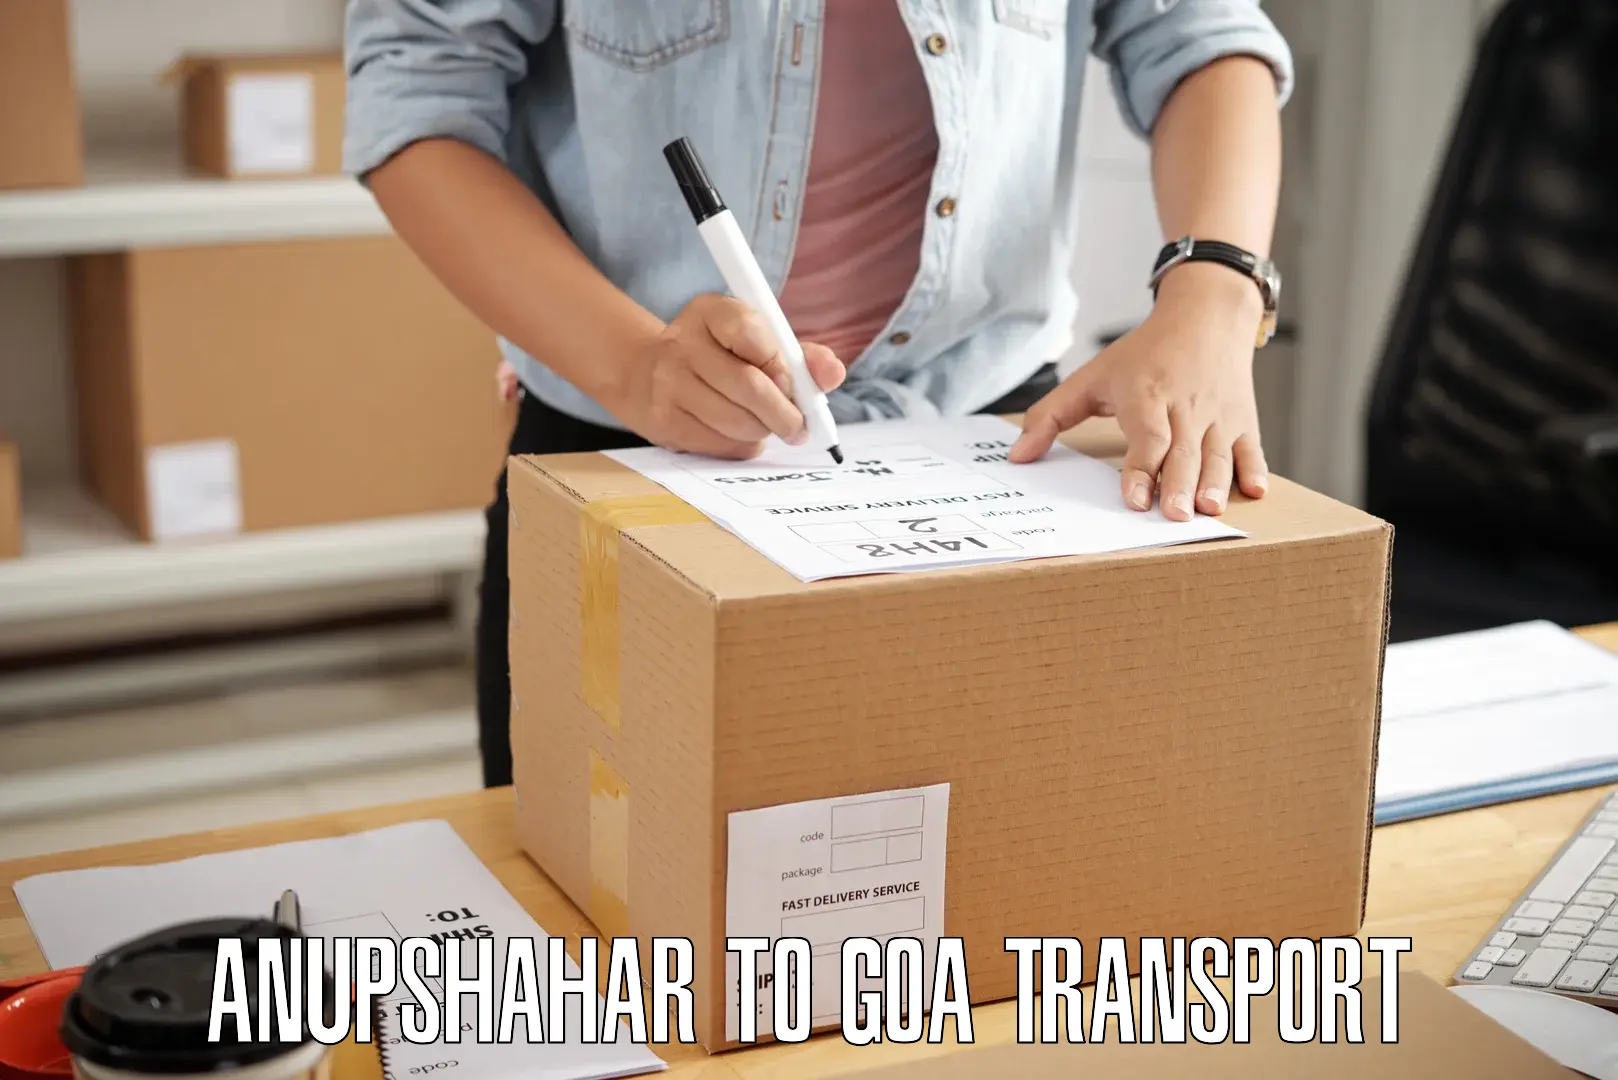 Two wheeler parcel service Anupshahar to Goa